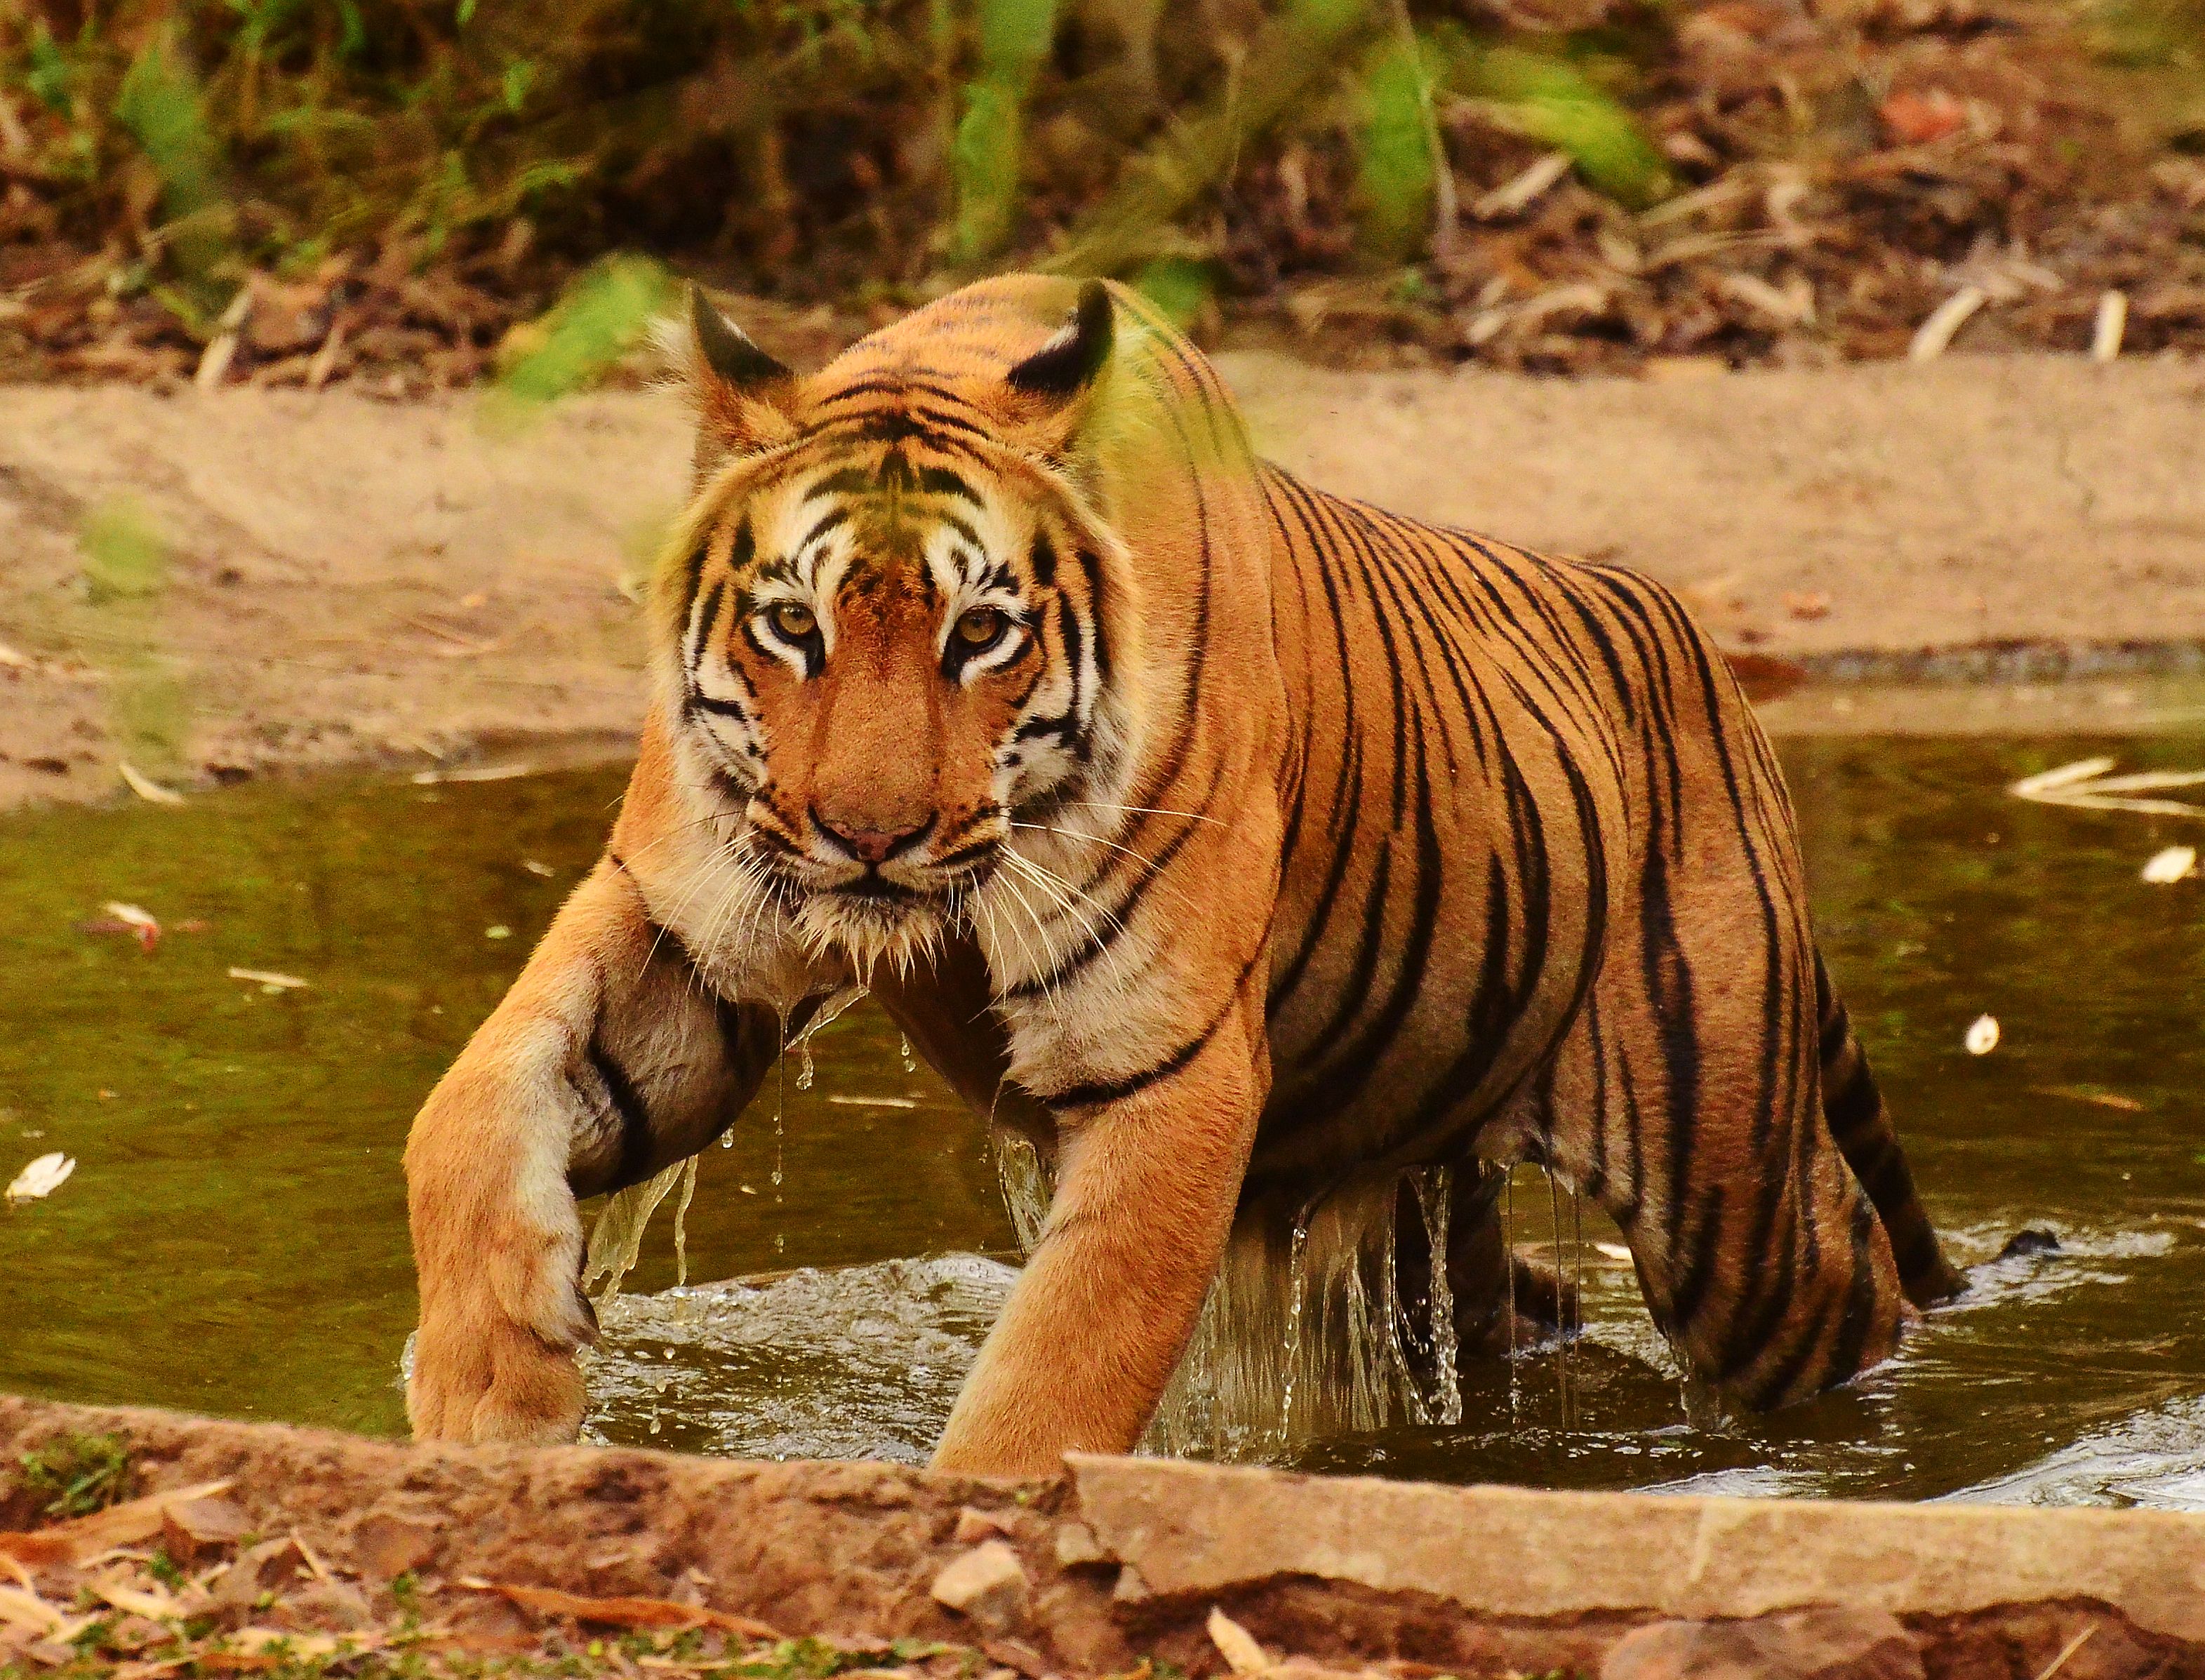 Sundarbans National Park Park in Asia